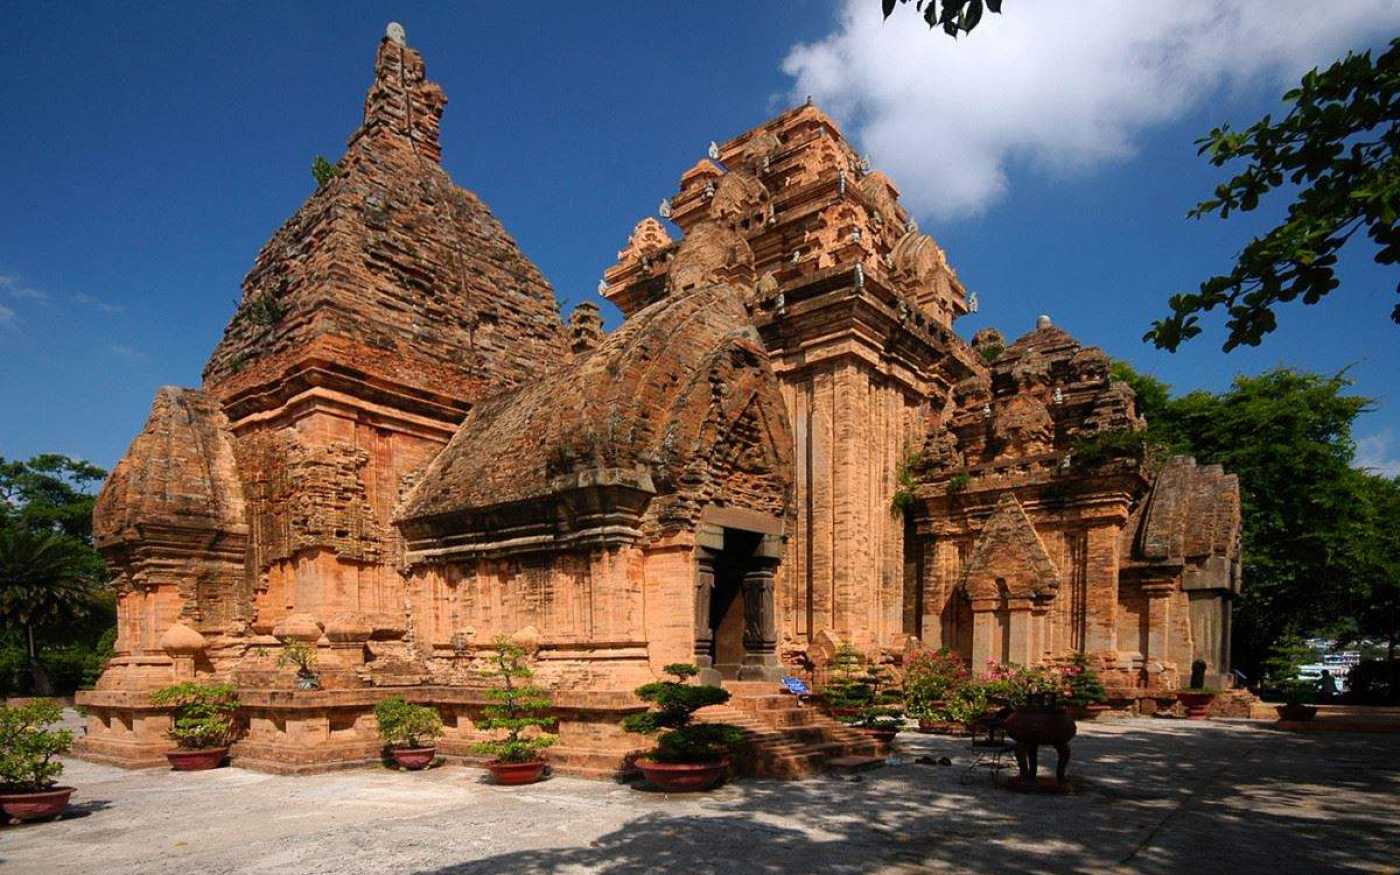 Tháp Bà Ponagar Nha Trang – quần thể kiến trúc văn hóa Champa lớn nhất miền Trung